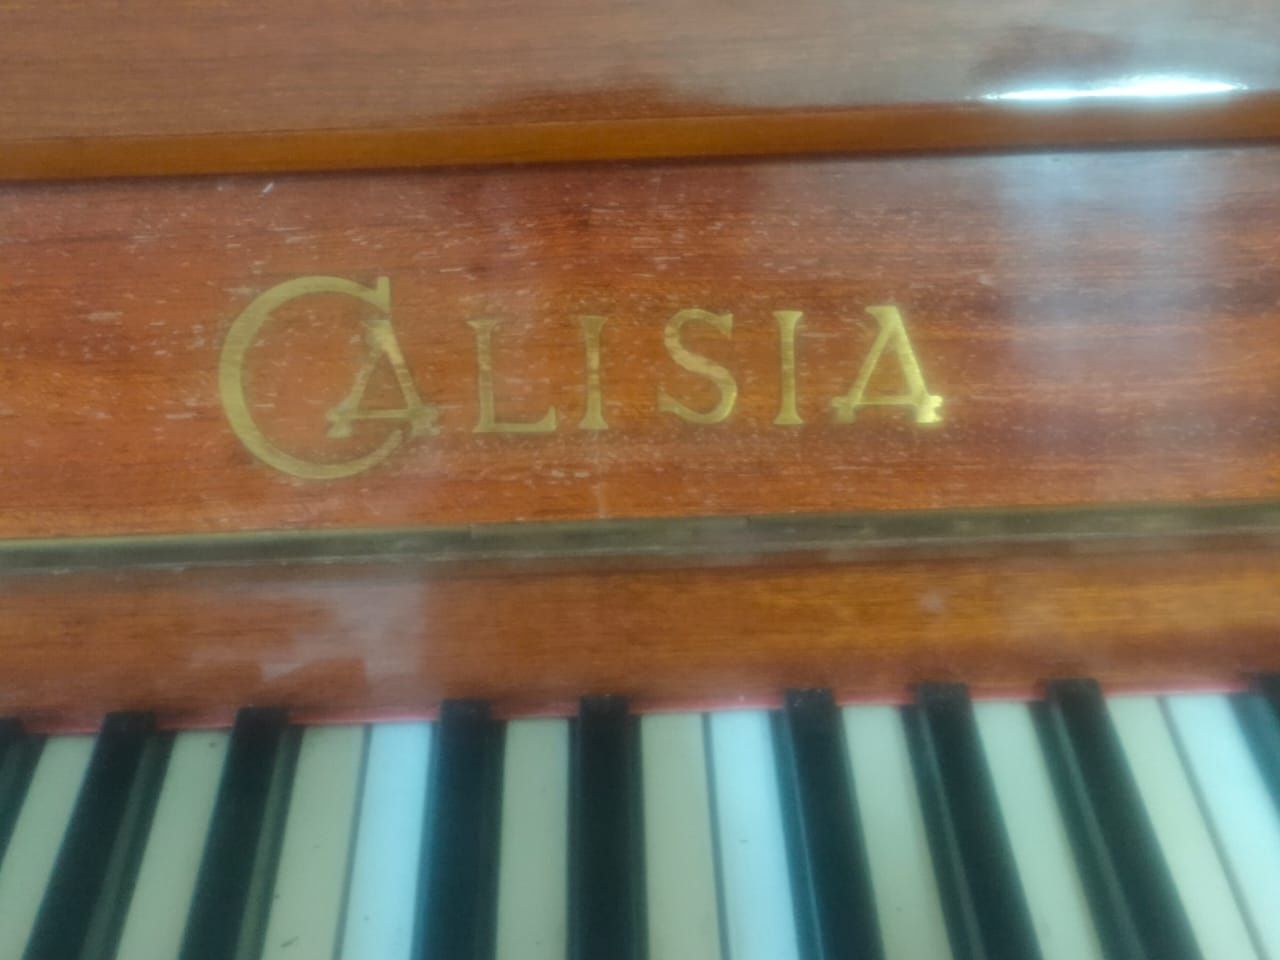 Продам фортепиано/пианино "Calisia"